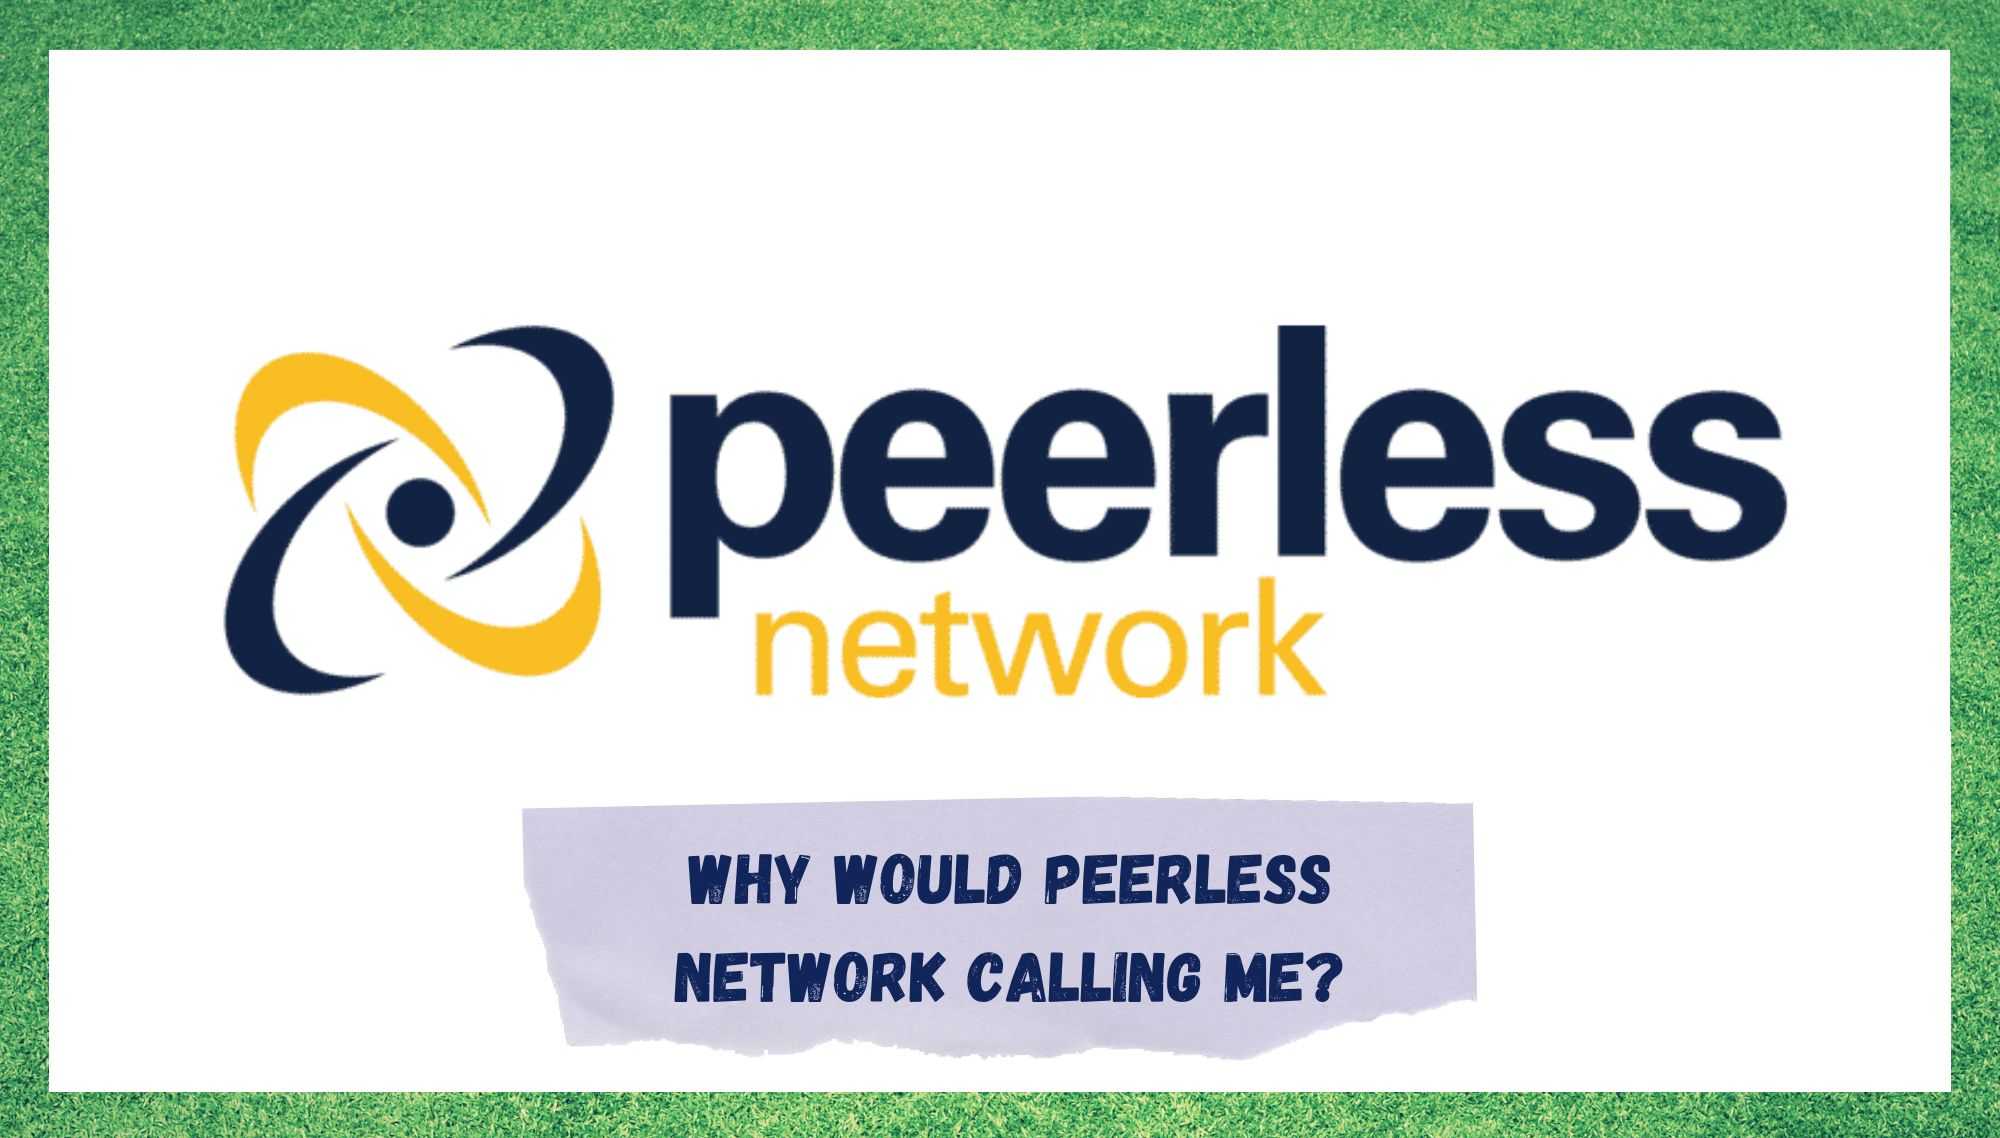 Af hverju myndi Peerless Network hringja í mig? (Útskýrt)